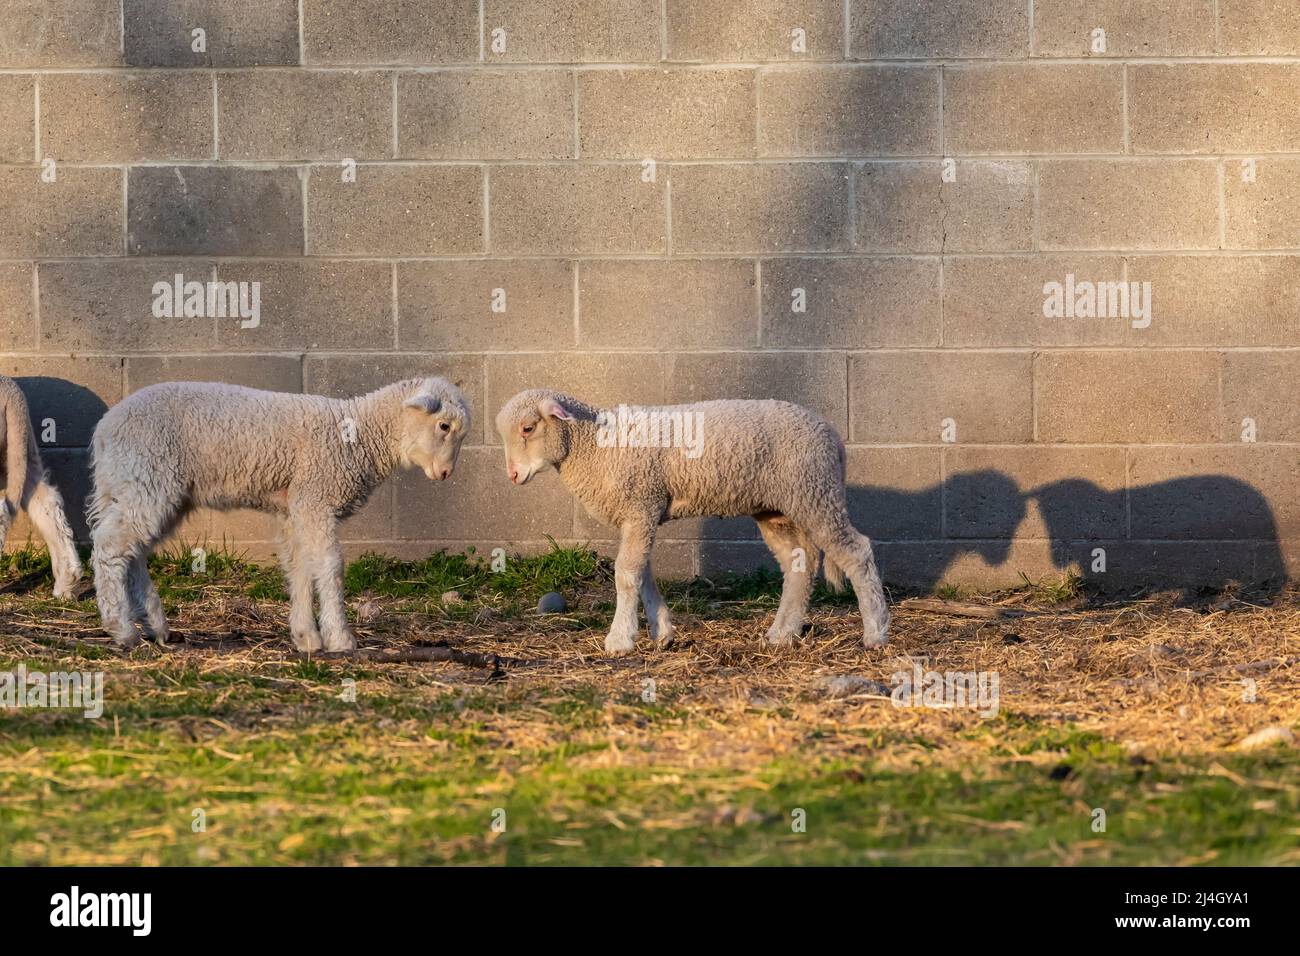 Jeunes moutons en jeu devant une grange Amish, au milieu du Michigan, aux États-Unis Banque D'Images